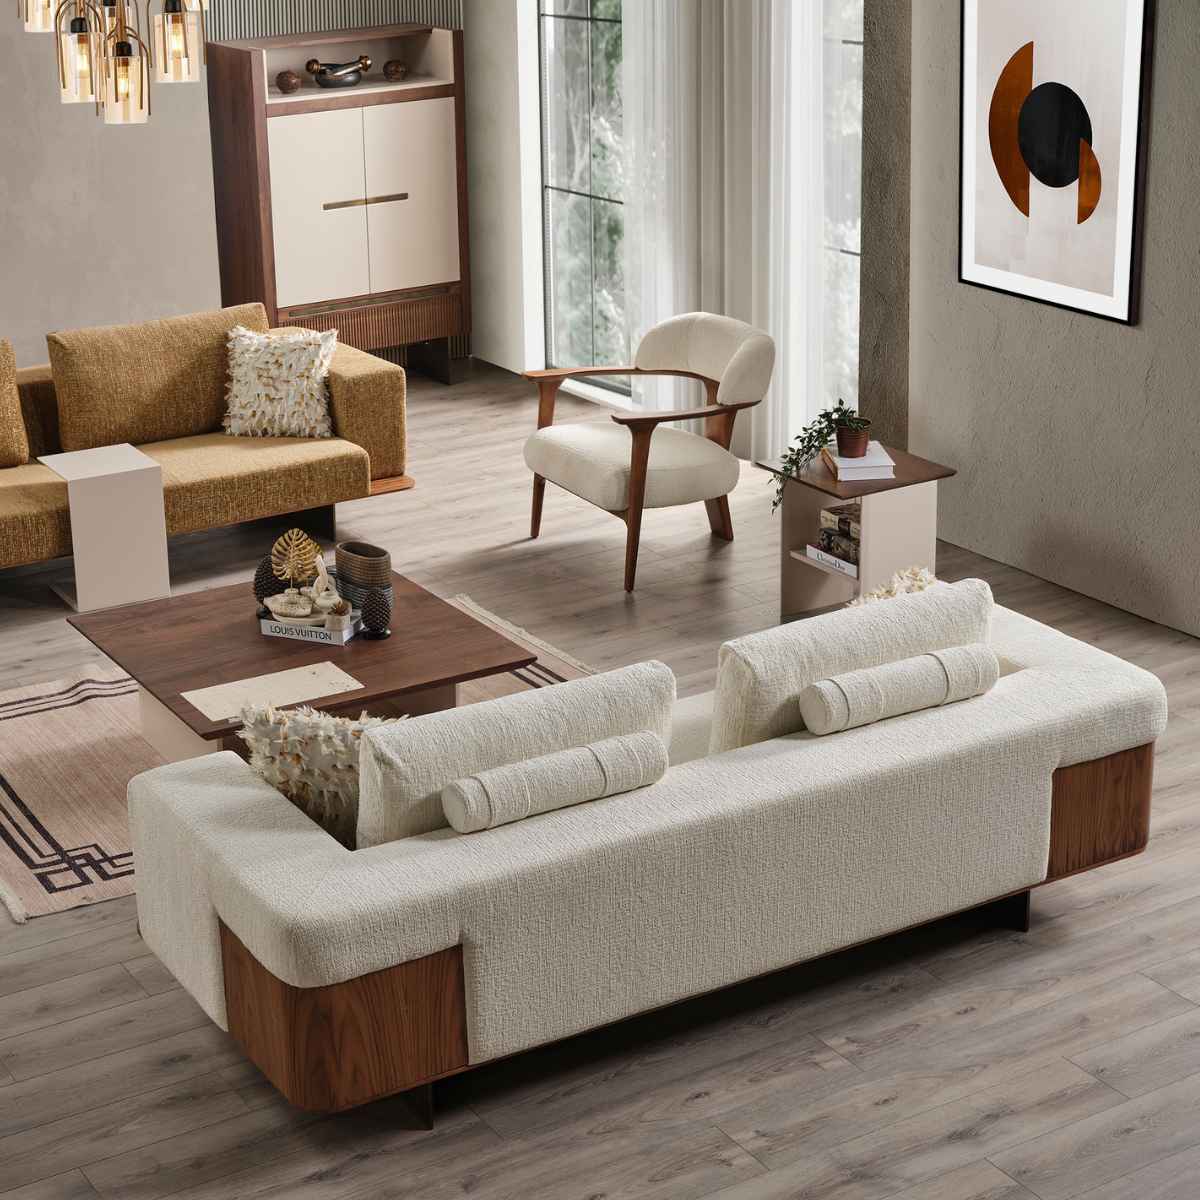 Canapea Modernă, Nata cu inserții de lemn